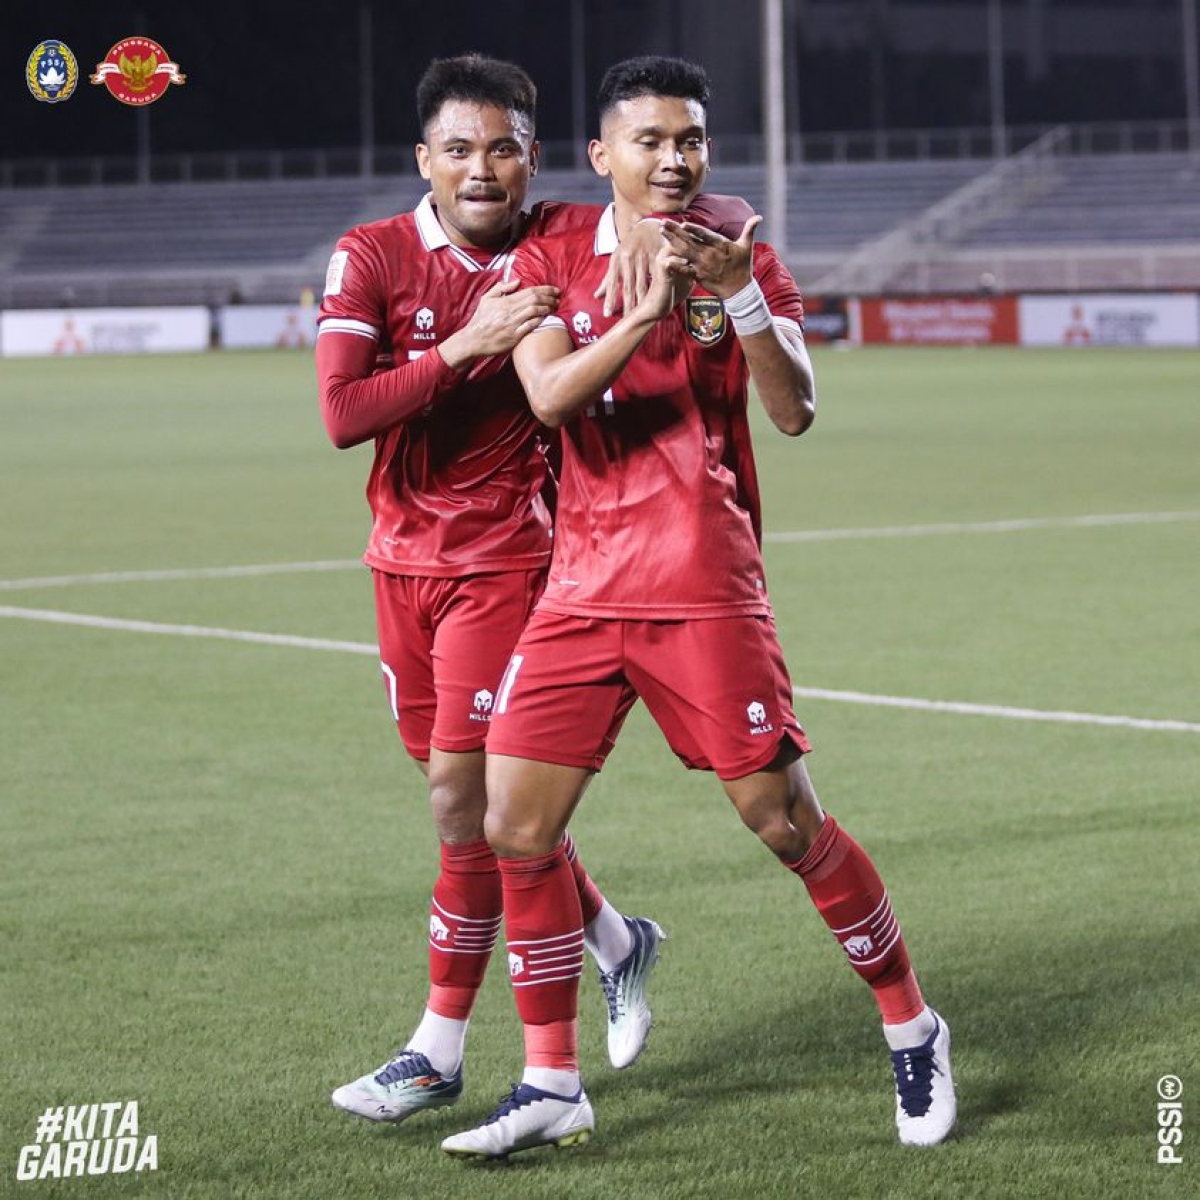 Kết quả AFF Cup 2022: Phung phí cơ hội, Indonesia chỉ có được ngôi nhì bảng A - Ảnh 1.